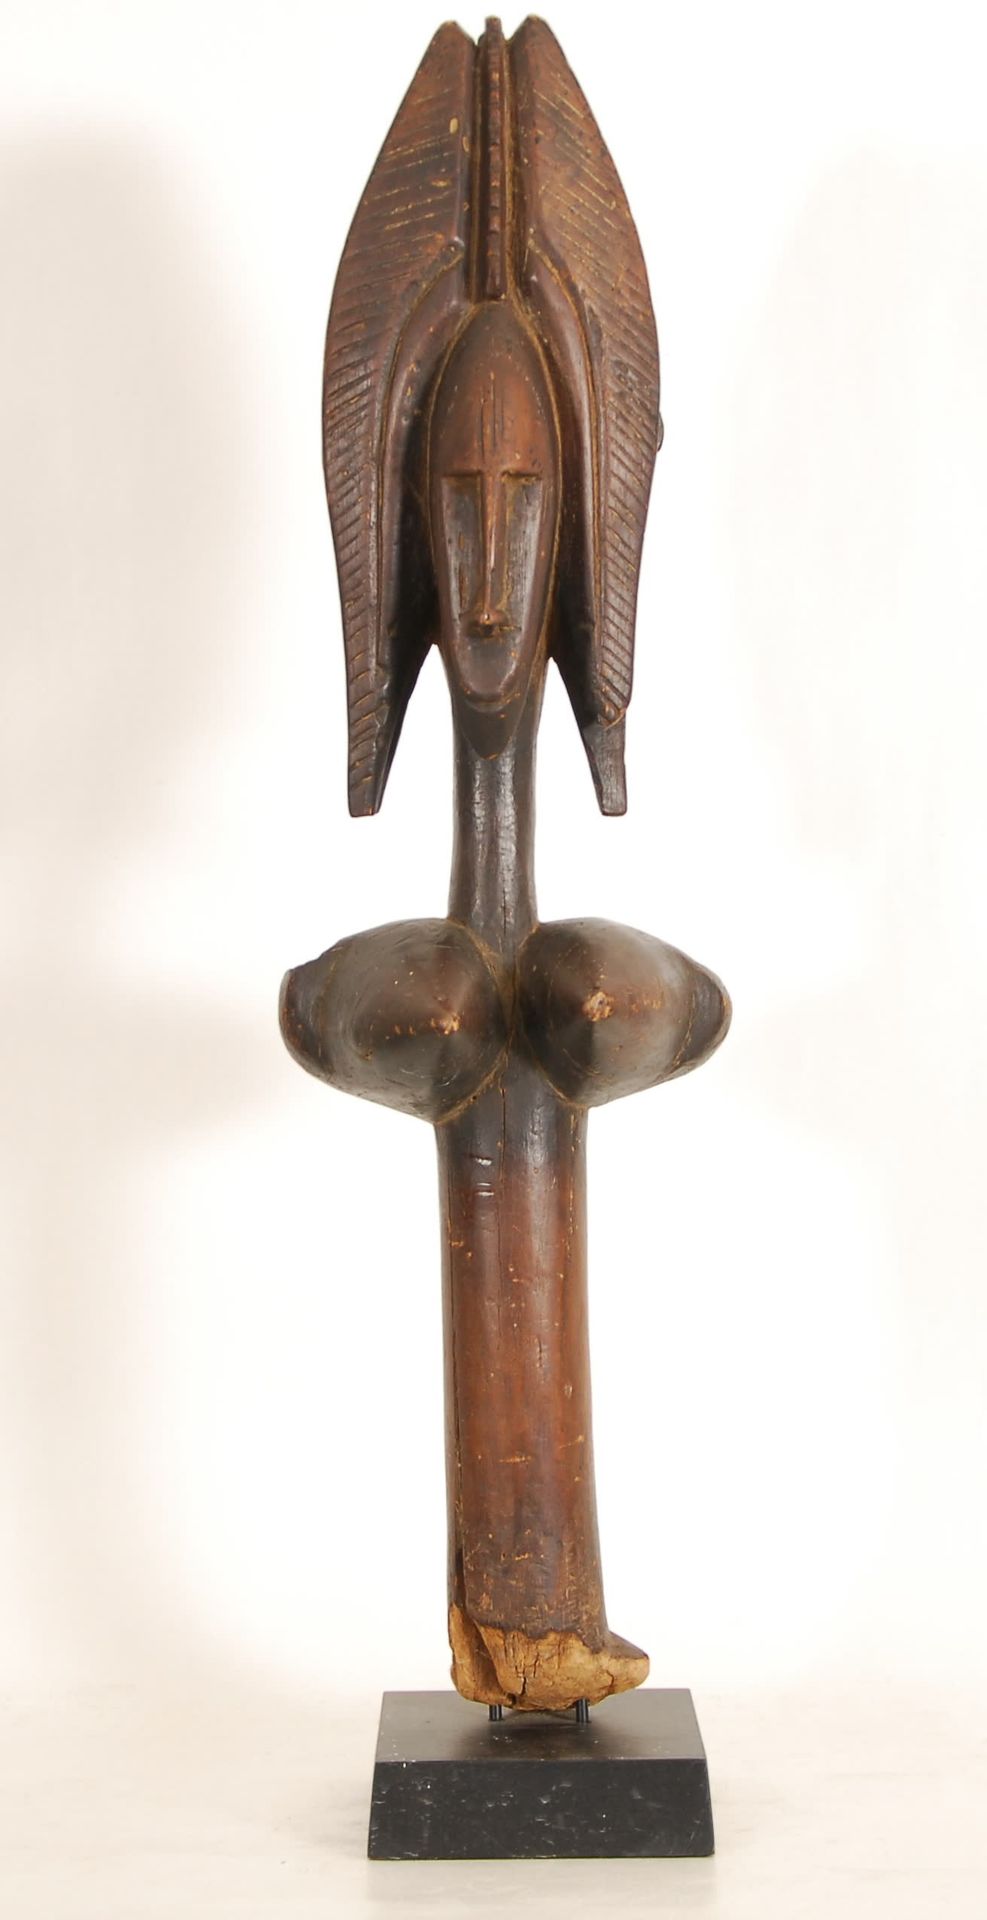 Afrique - Africa Marioneta bambara
Madera tallada, Malí.
H. 82 cm.
Procedencia: &hellip;